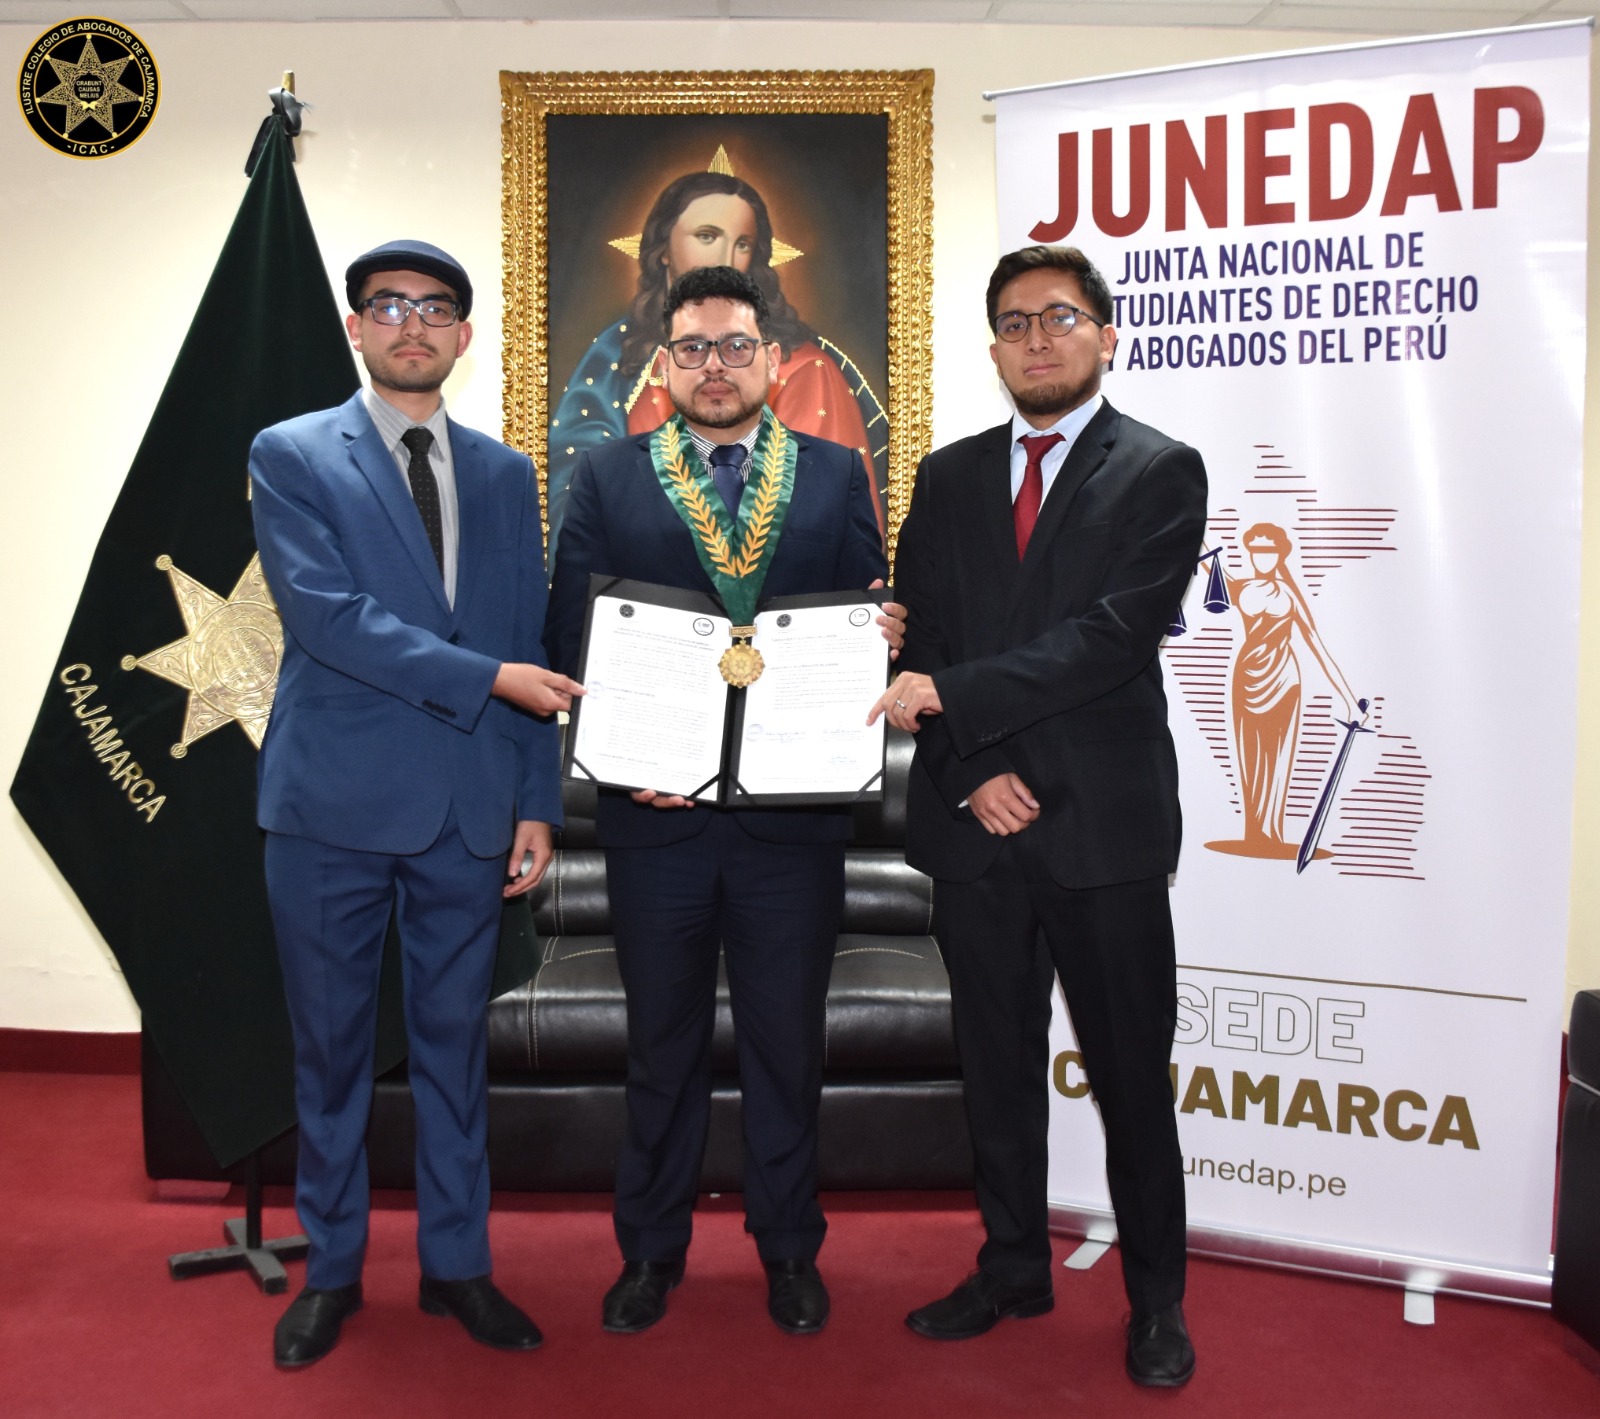 Convenio de Cooperación con la Junta Nacional de Estudiantes de Derecho y Abogados del Perú - Junedap